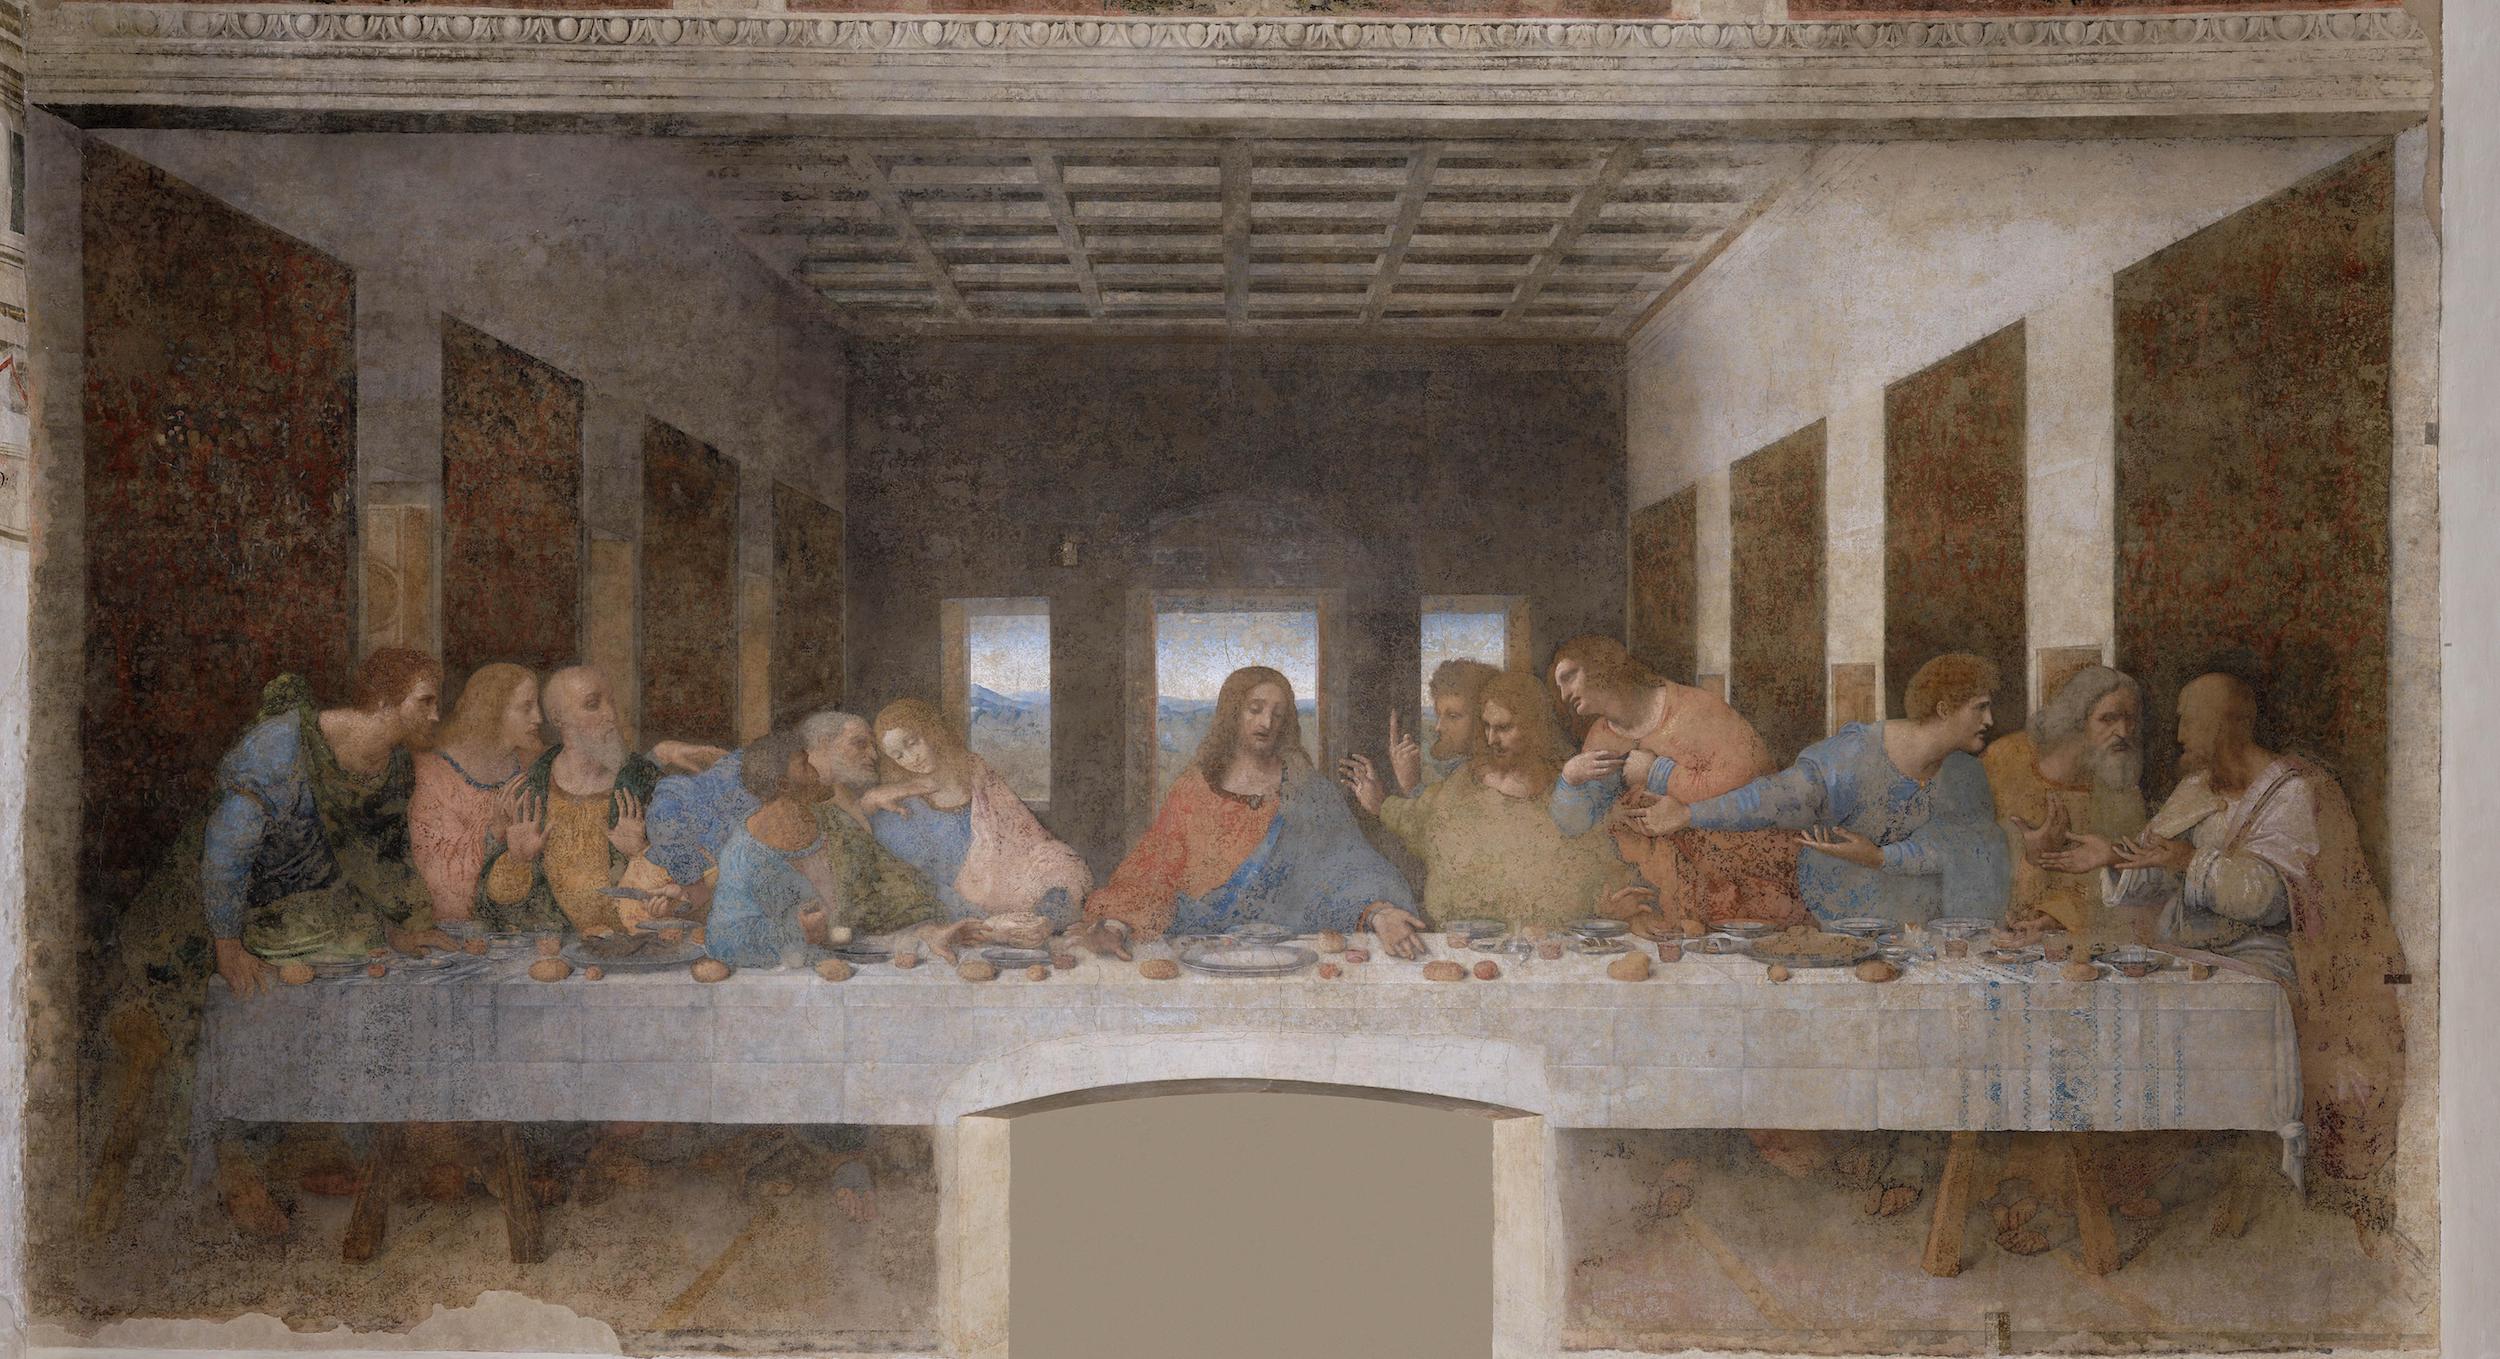 The Last Supper by Leonardo da Vinci - 1495-1498 - 460 x 880 cm Santa Maria delle Grazie